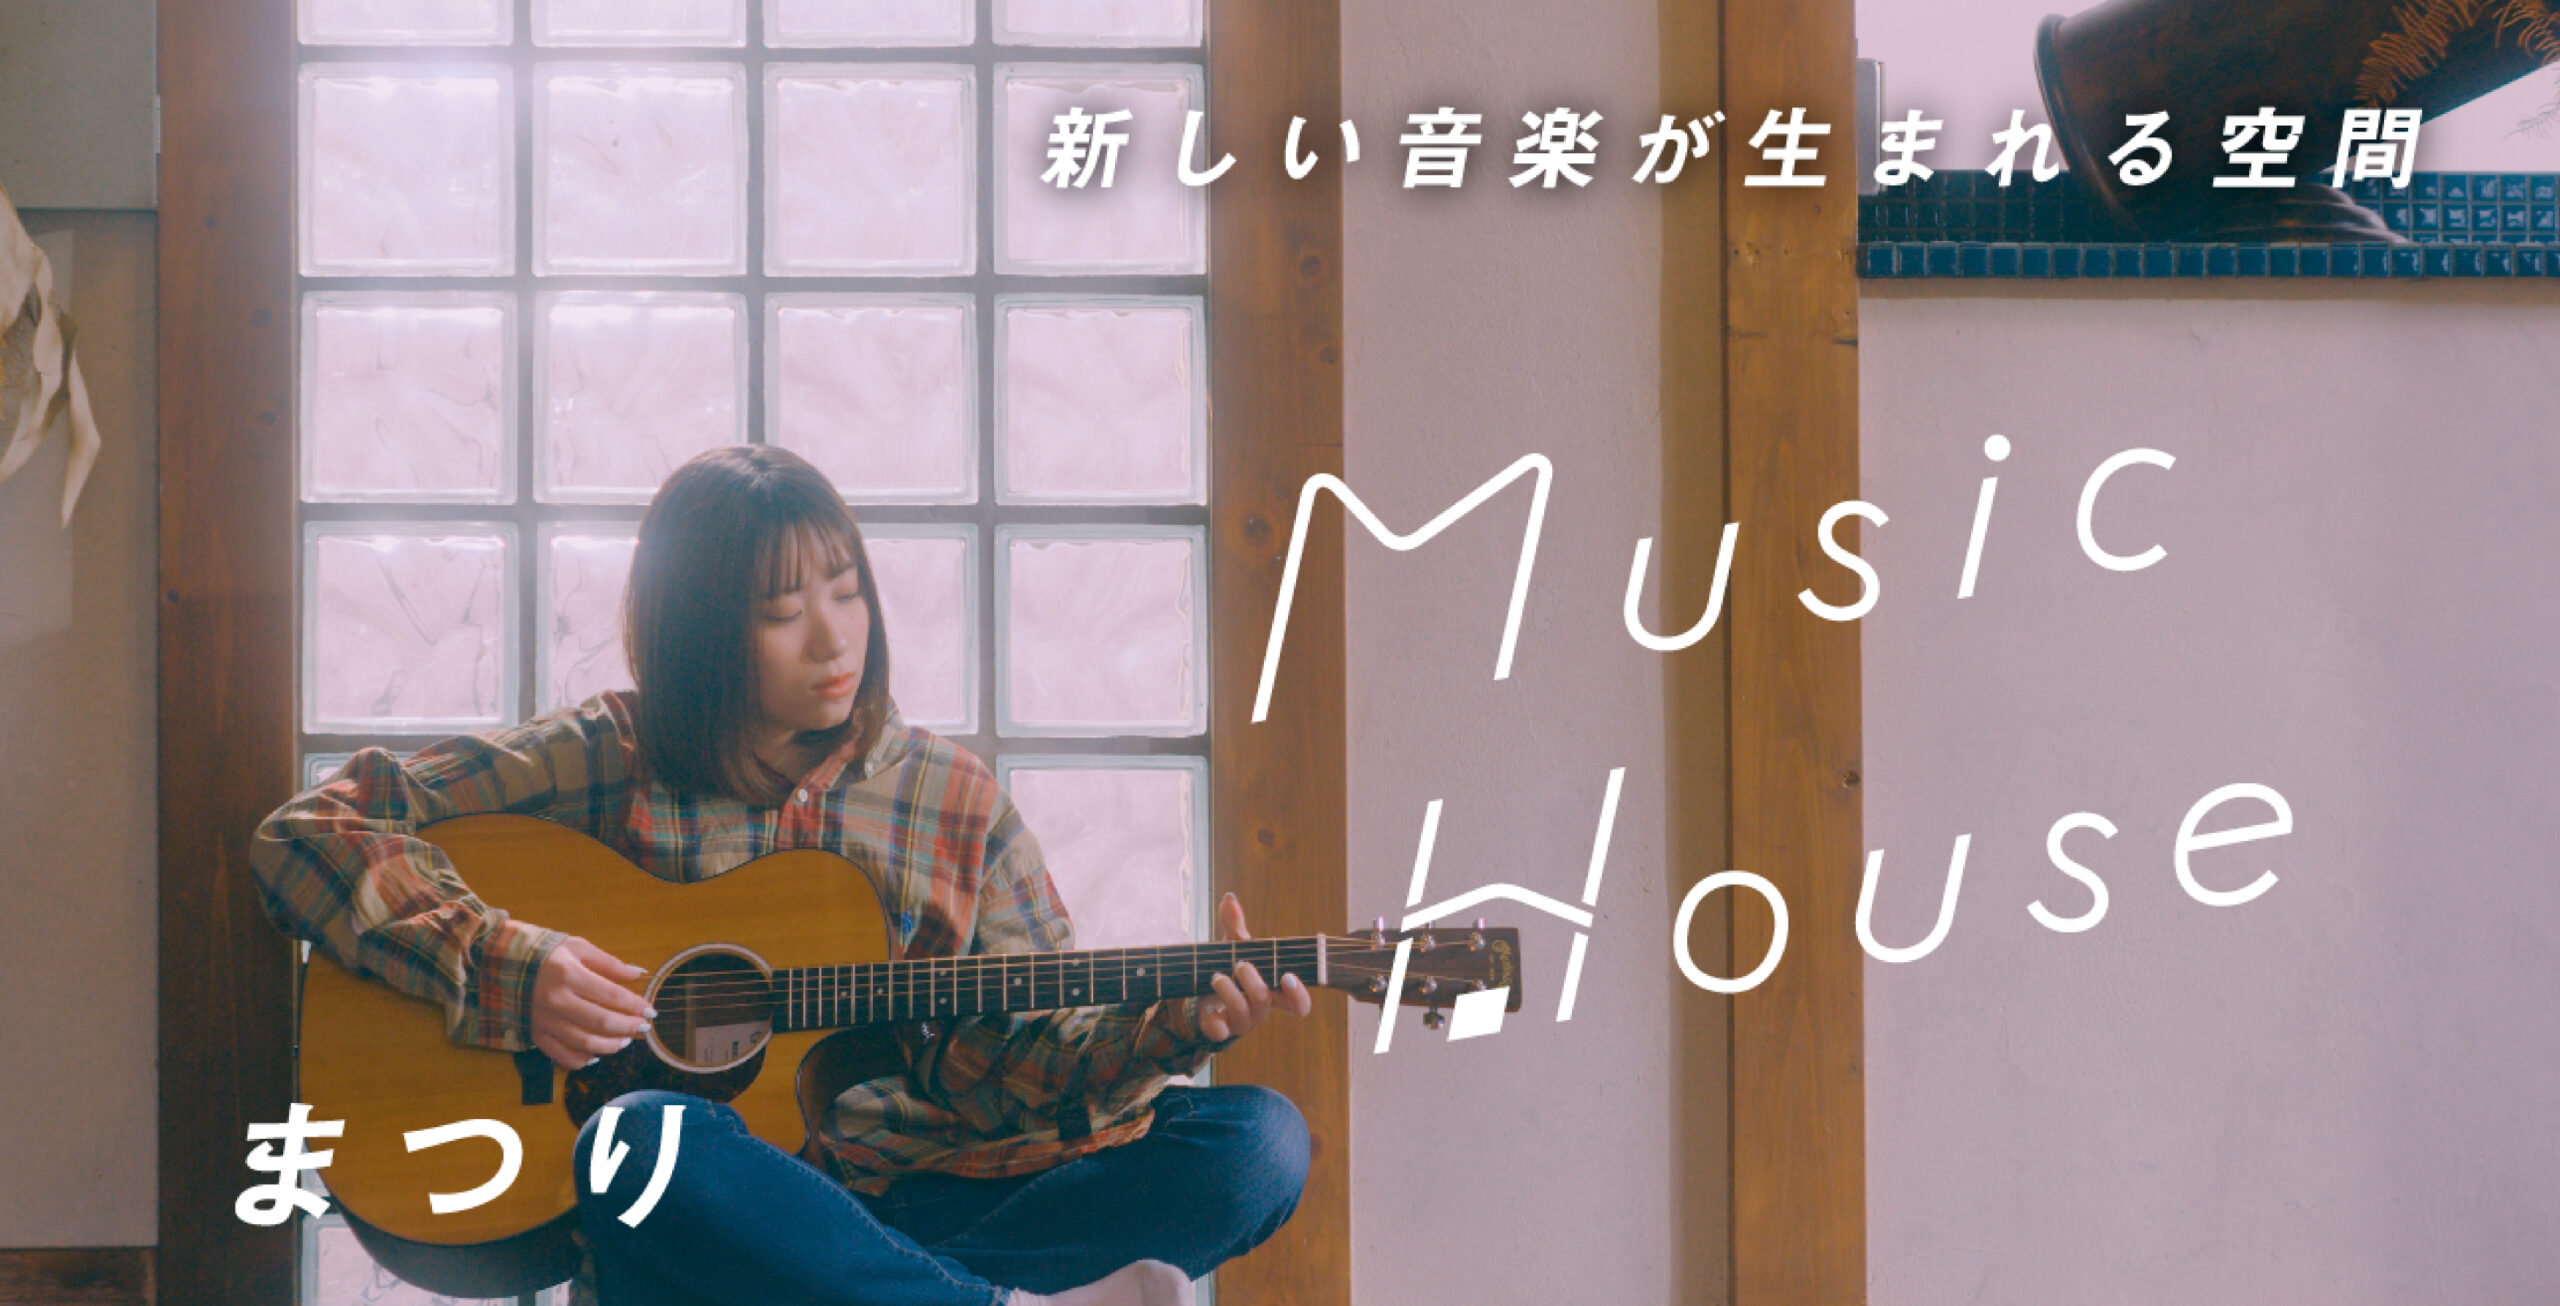 ショートムービープラットフォーム「LINE VOOM」にて、アーティストの自然体のパフォーマンスを楽しめる音楽番組「Music House」の配信がスタート！